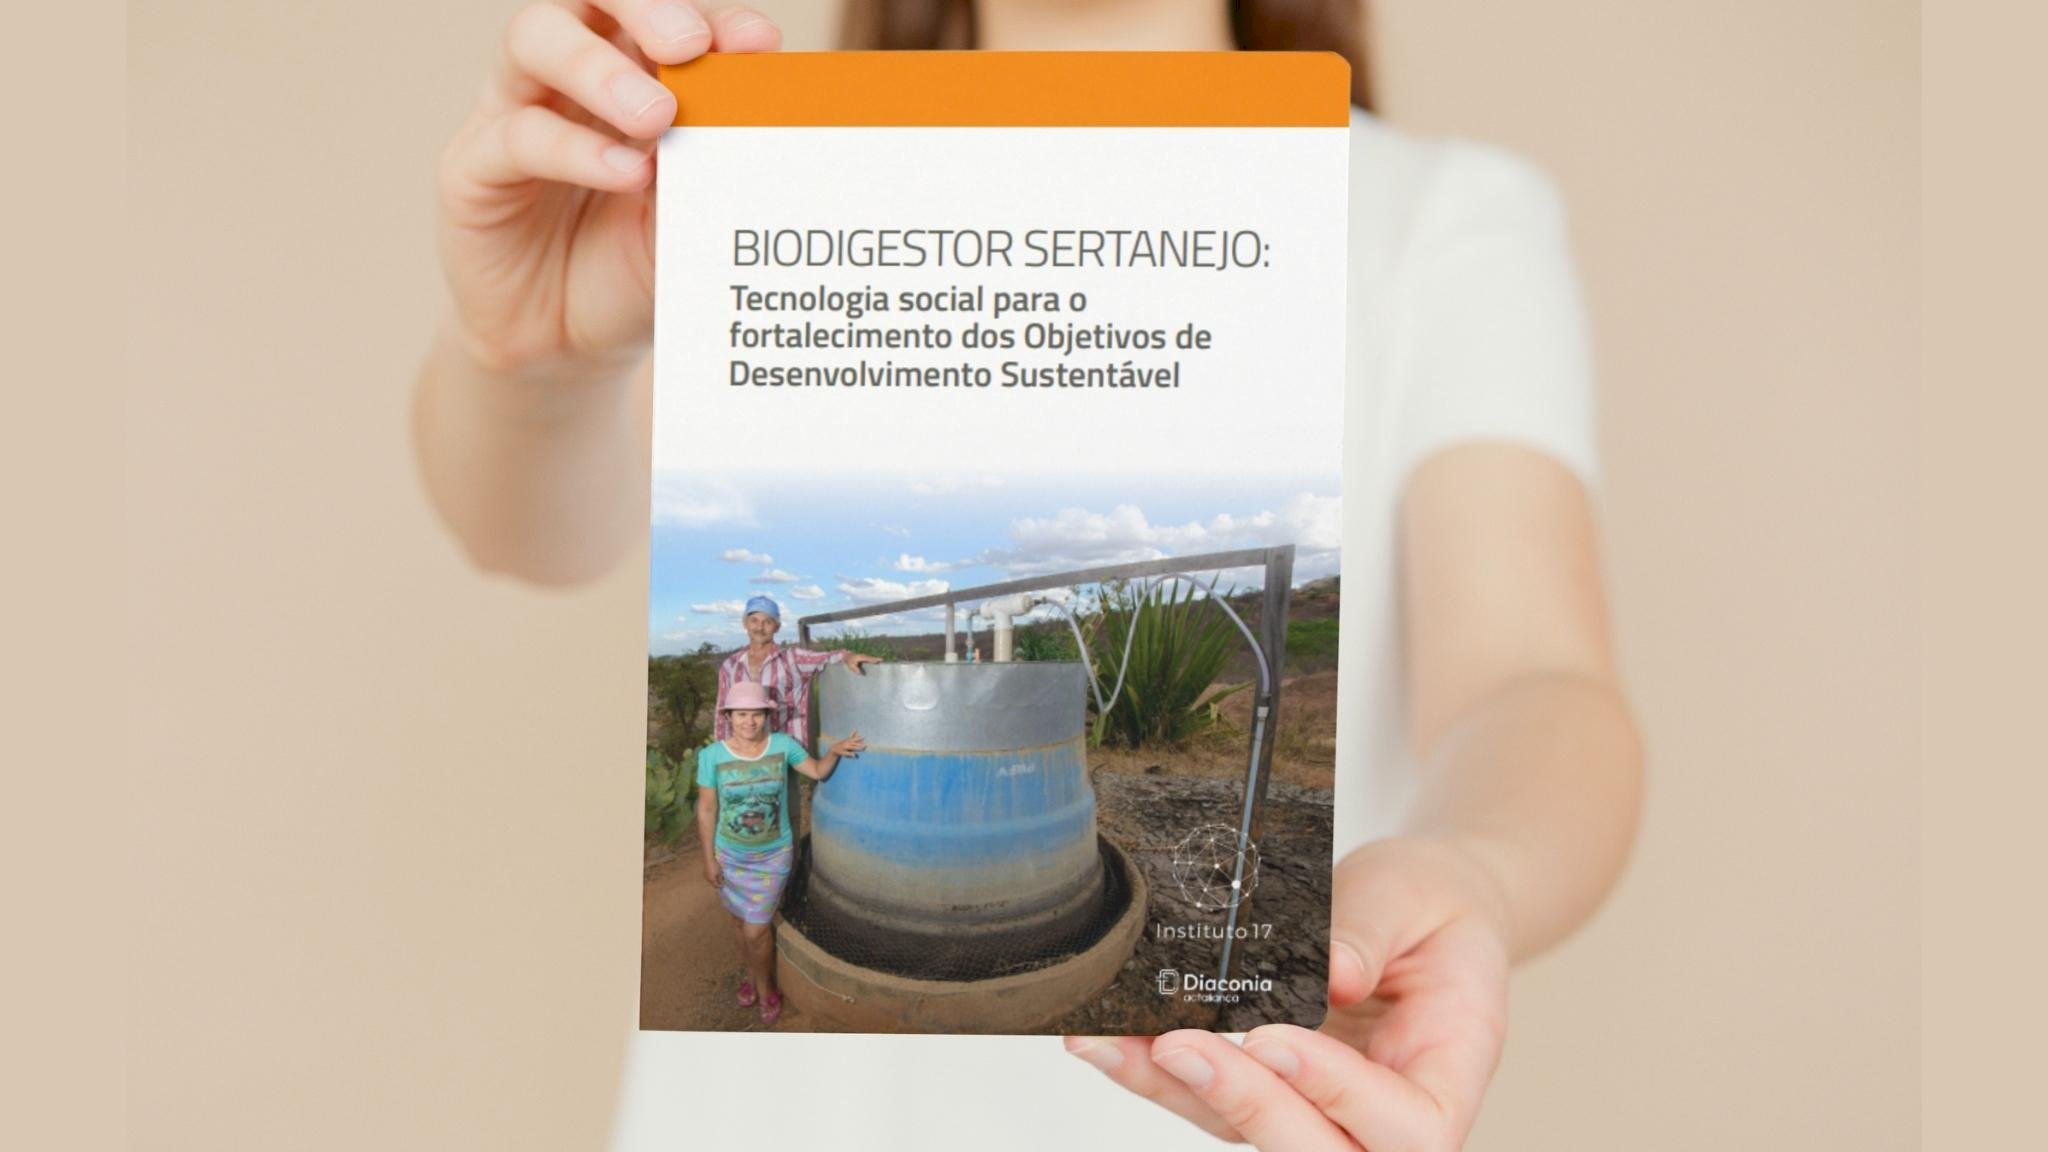 Biodigestor Sertanejo: Tecnologia social para o fortalecimento dos Objetivos de Desenvolvimento Sustentável